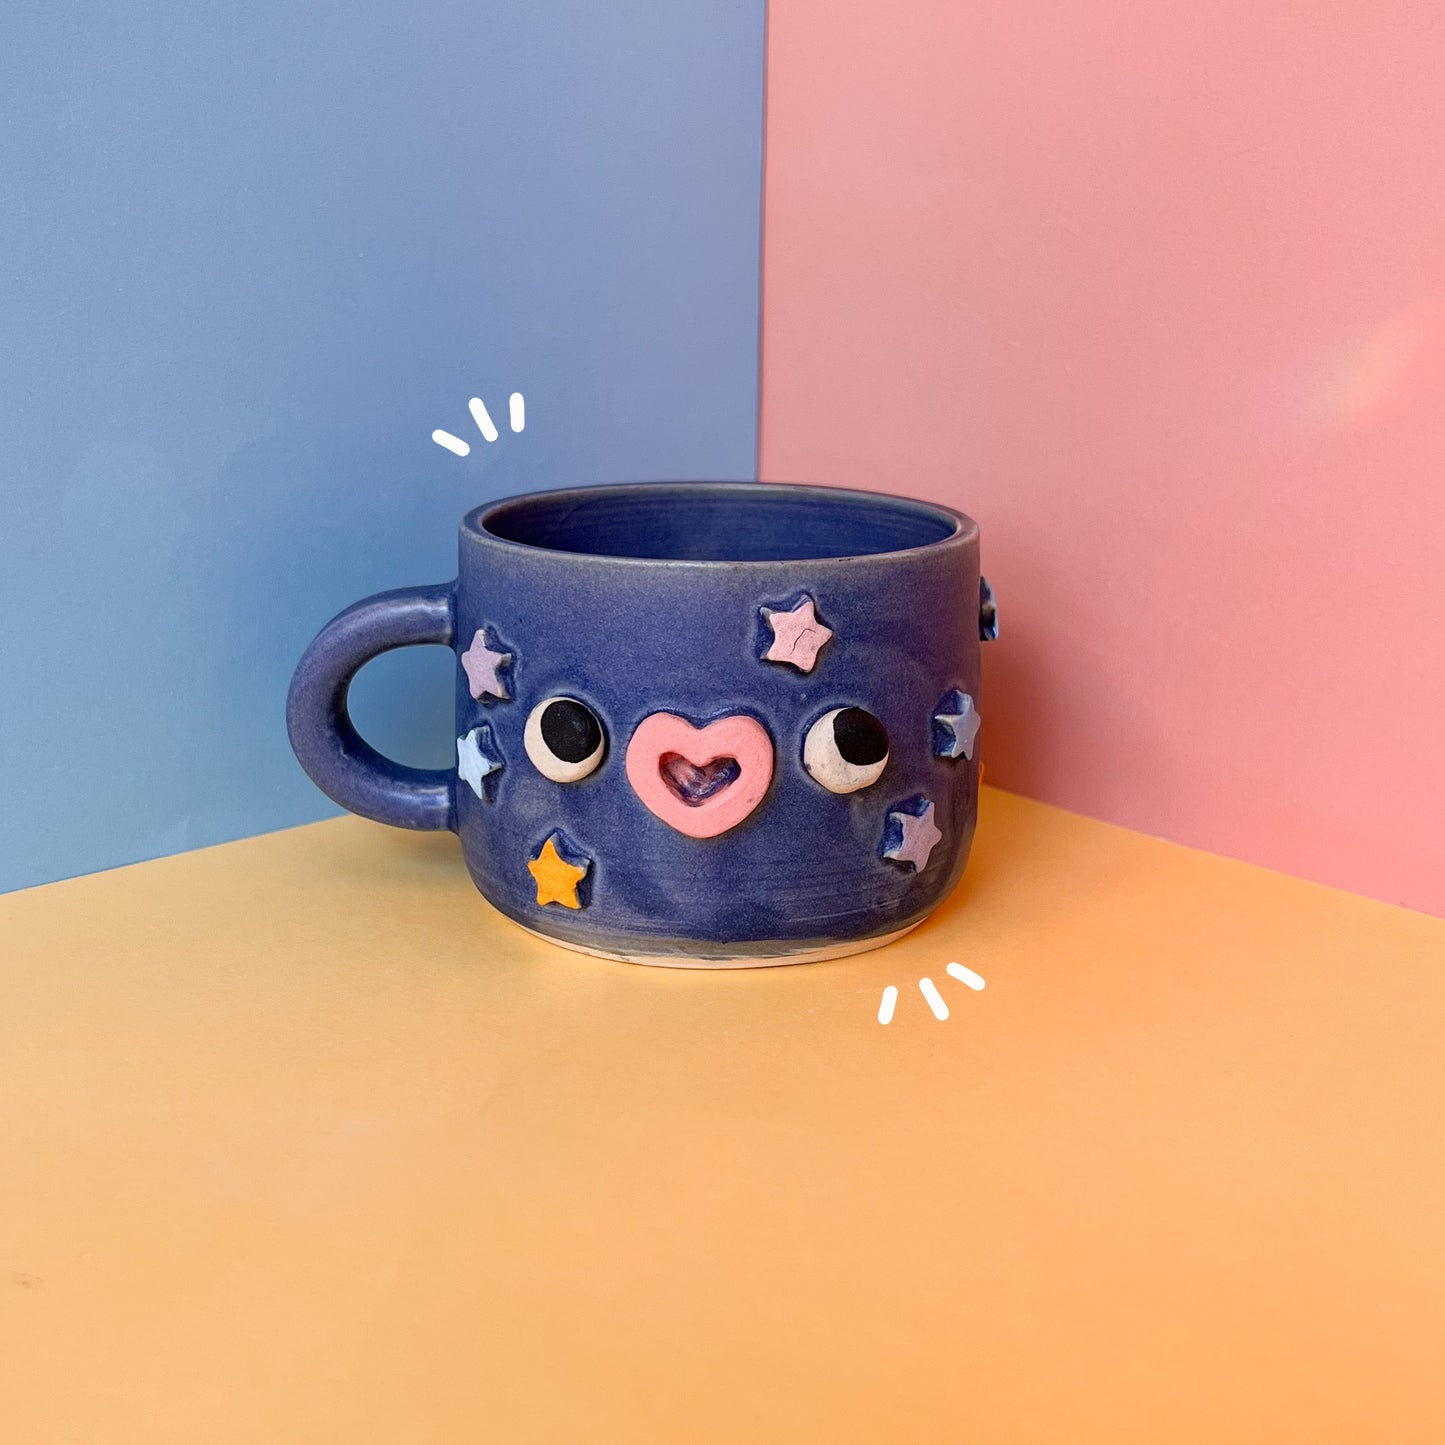 Starry mug